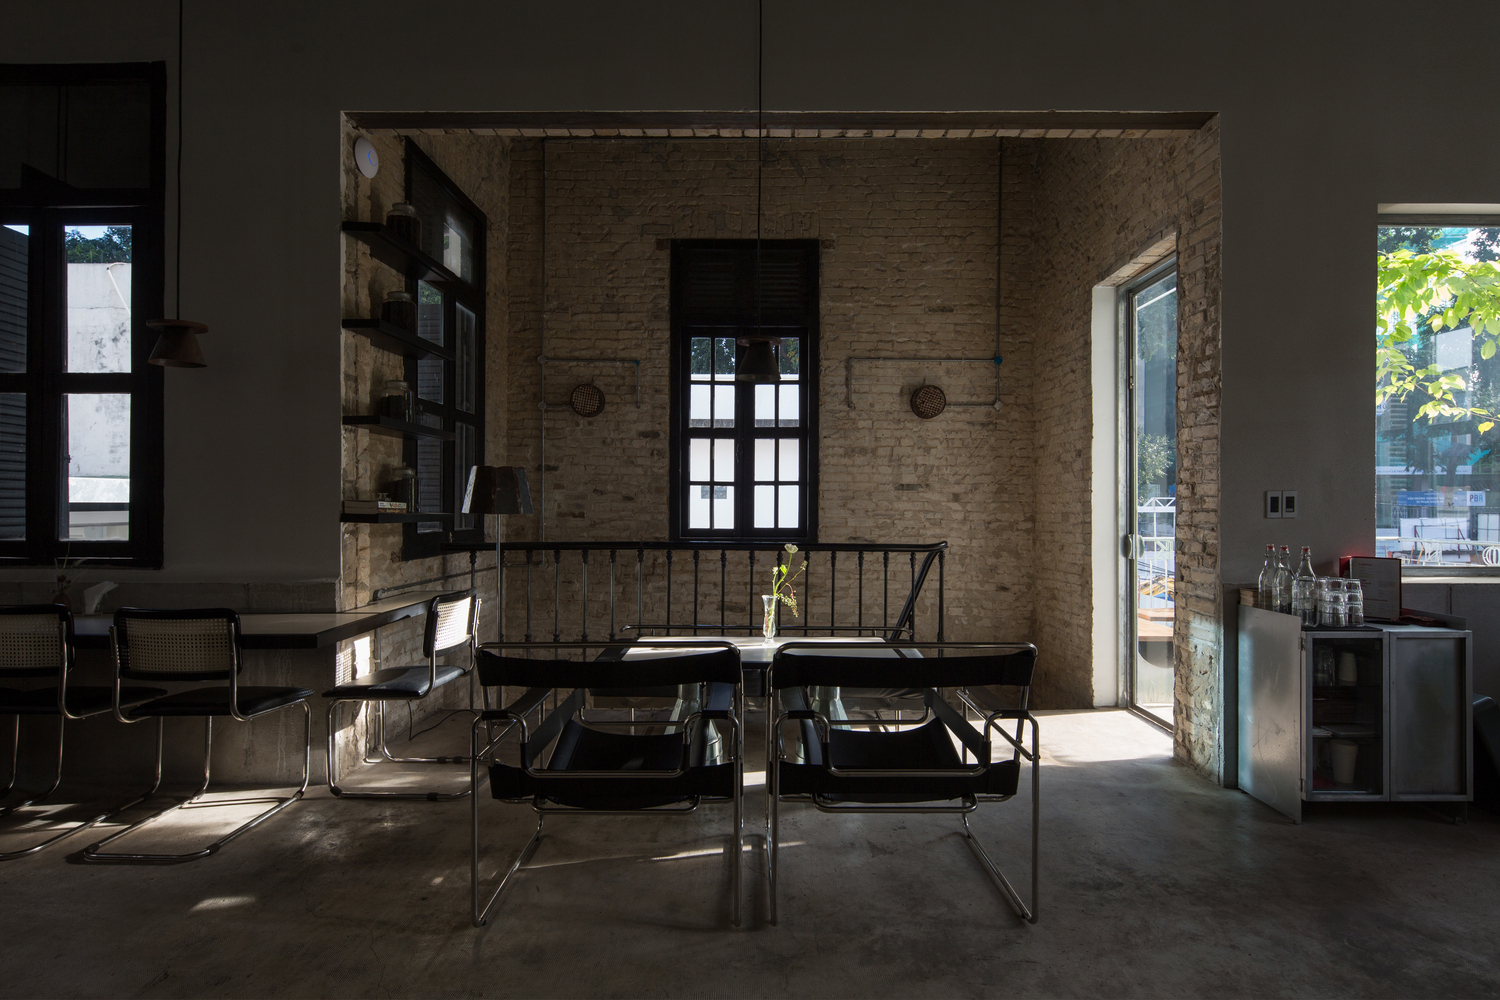 hình ảnh không gian bên trong quán cà phê với tường bê tông thô mộc, bàn ghế kiểu dáng hiện đại